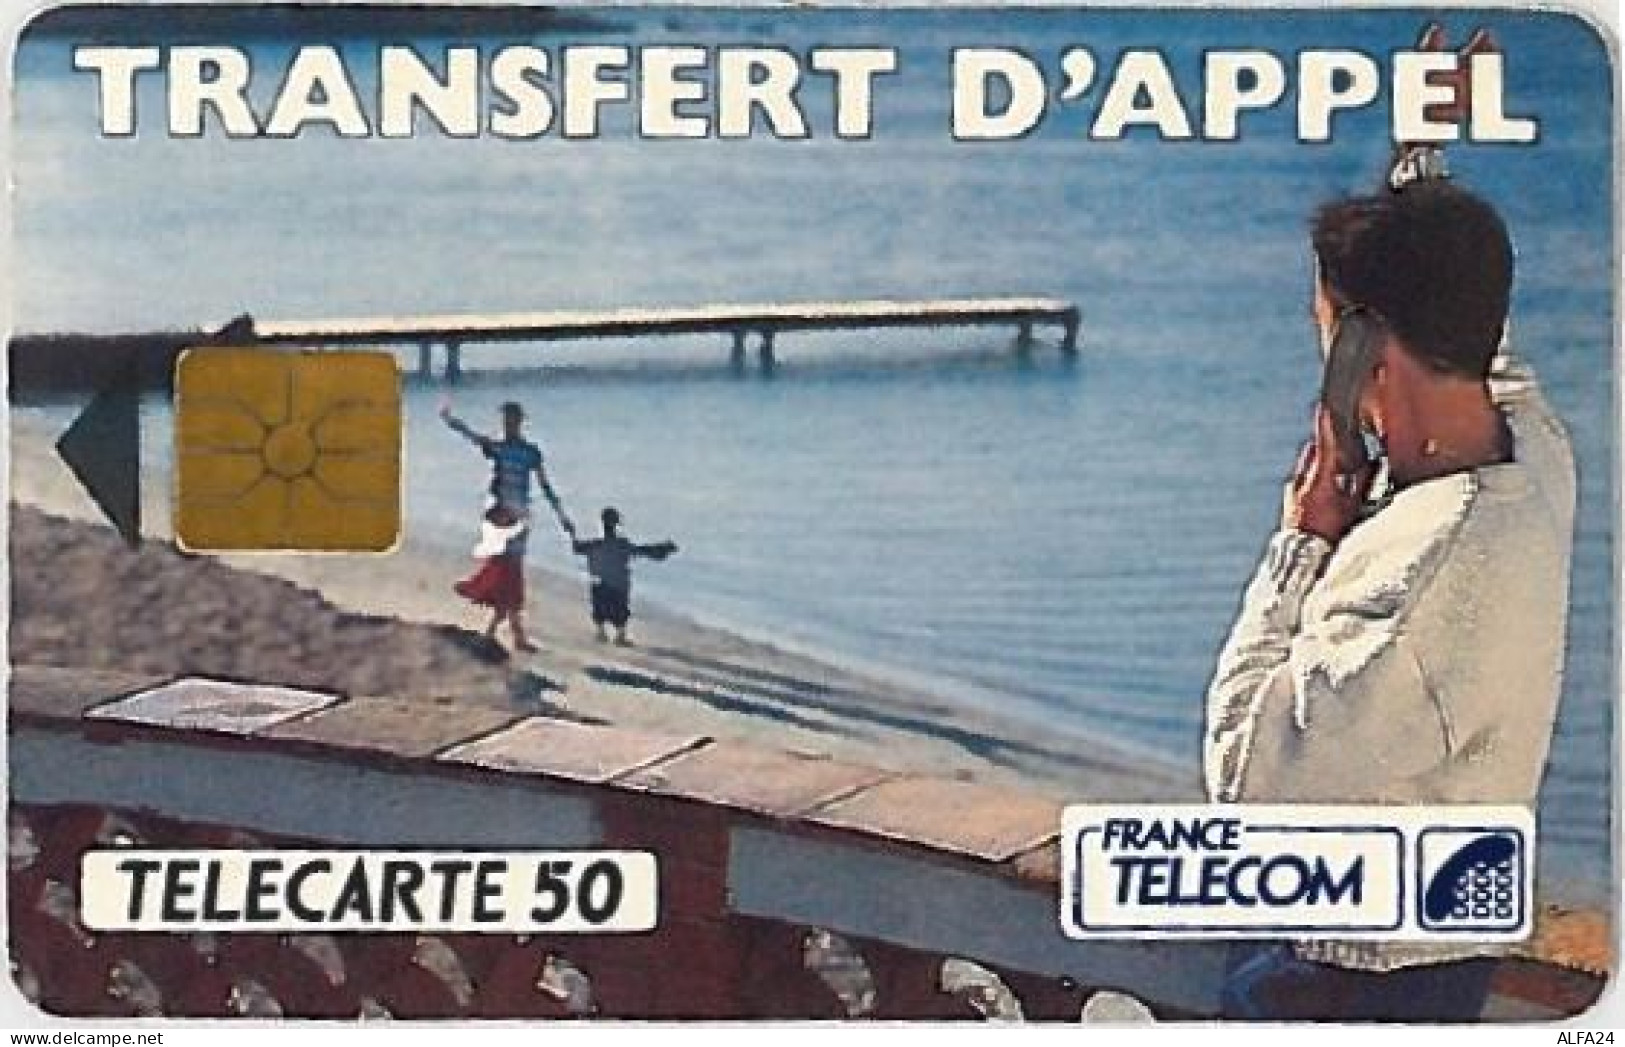 TELECARTE F275D 8-92 TRANSFERT D'APPEL - 1992